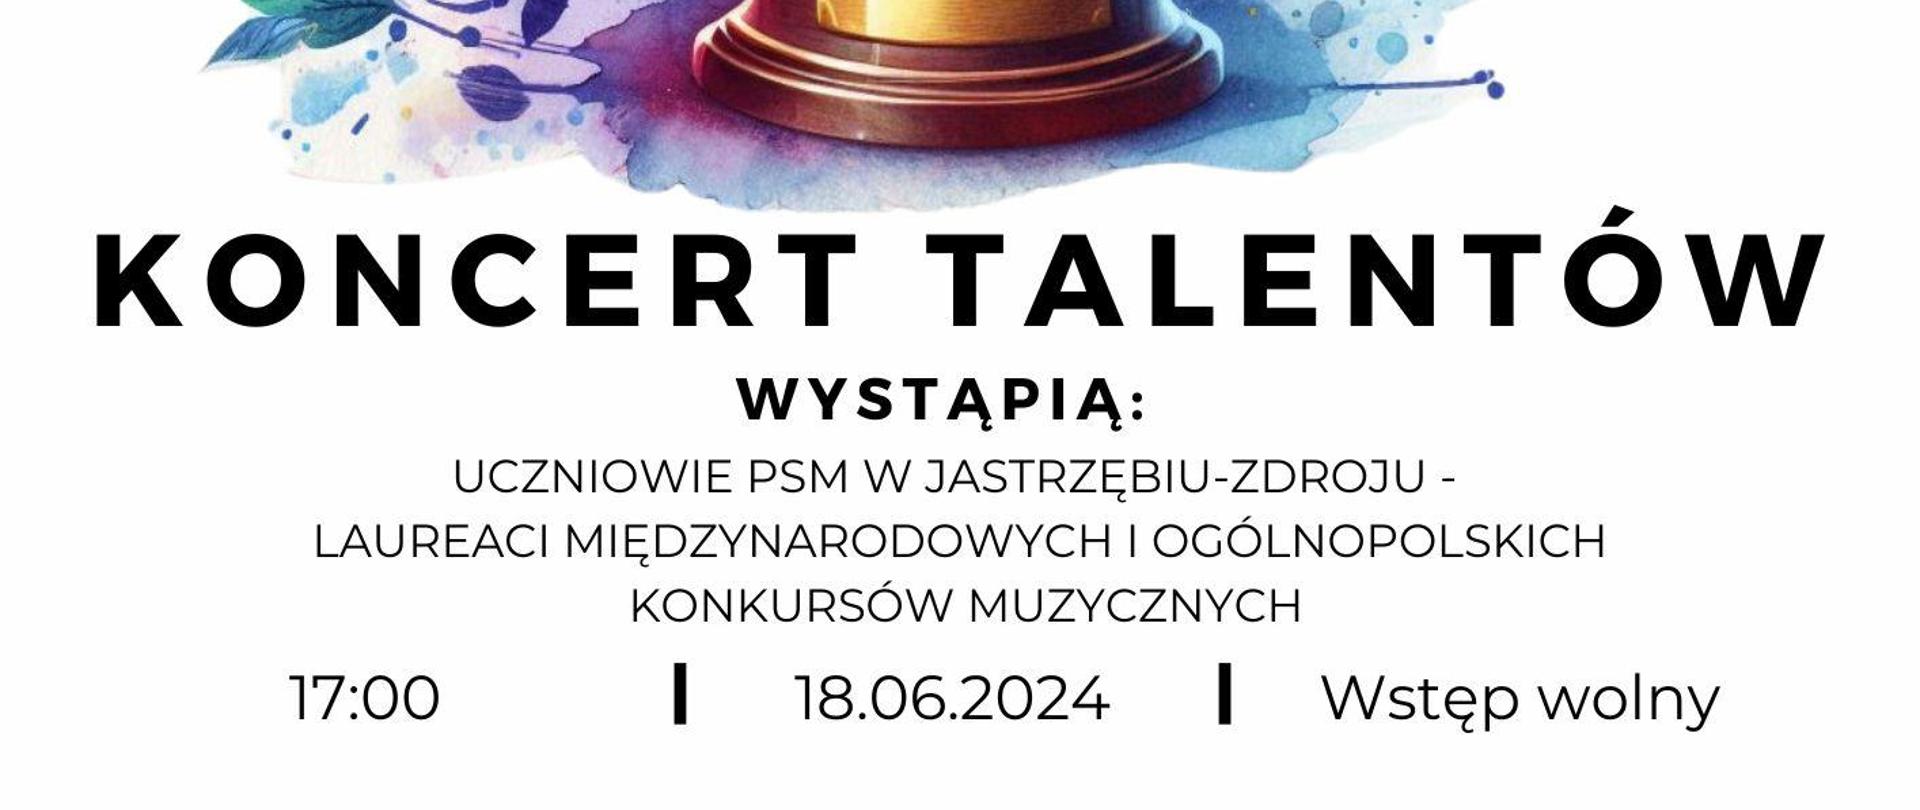 Plakat informacyjny dotyczący Koncertu talentów odbywającego się w dniu 18.06.2024 o godz. 17.00.